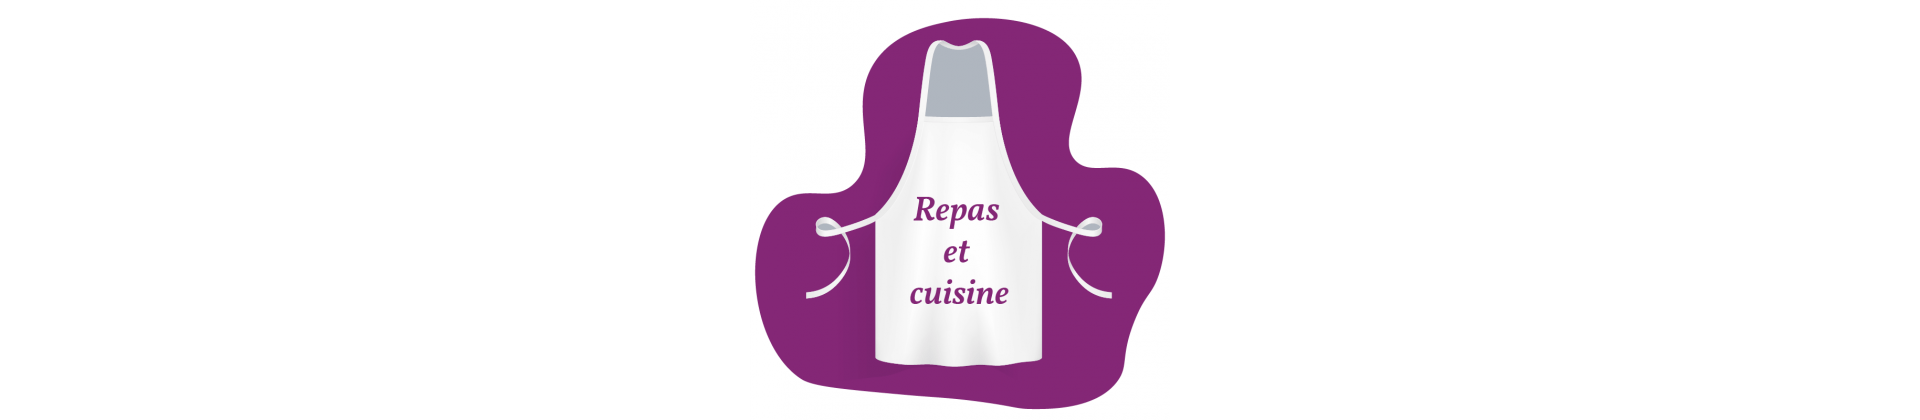 Repas & cuisine